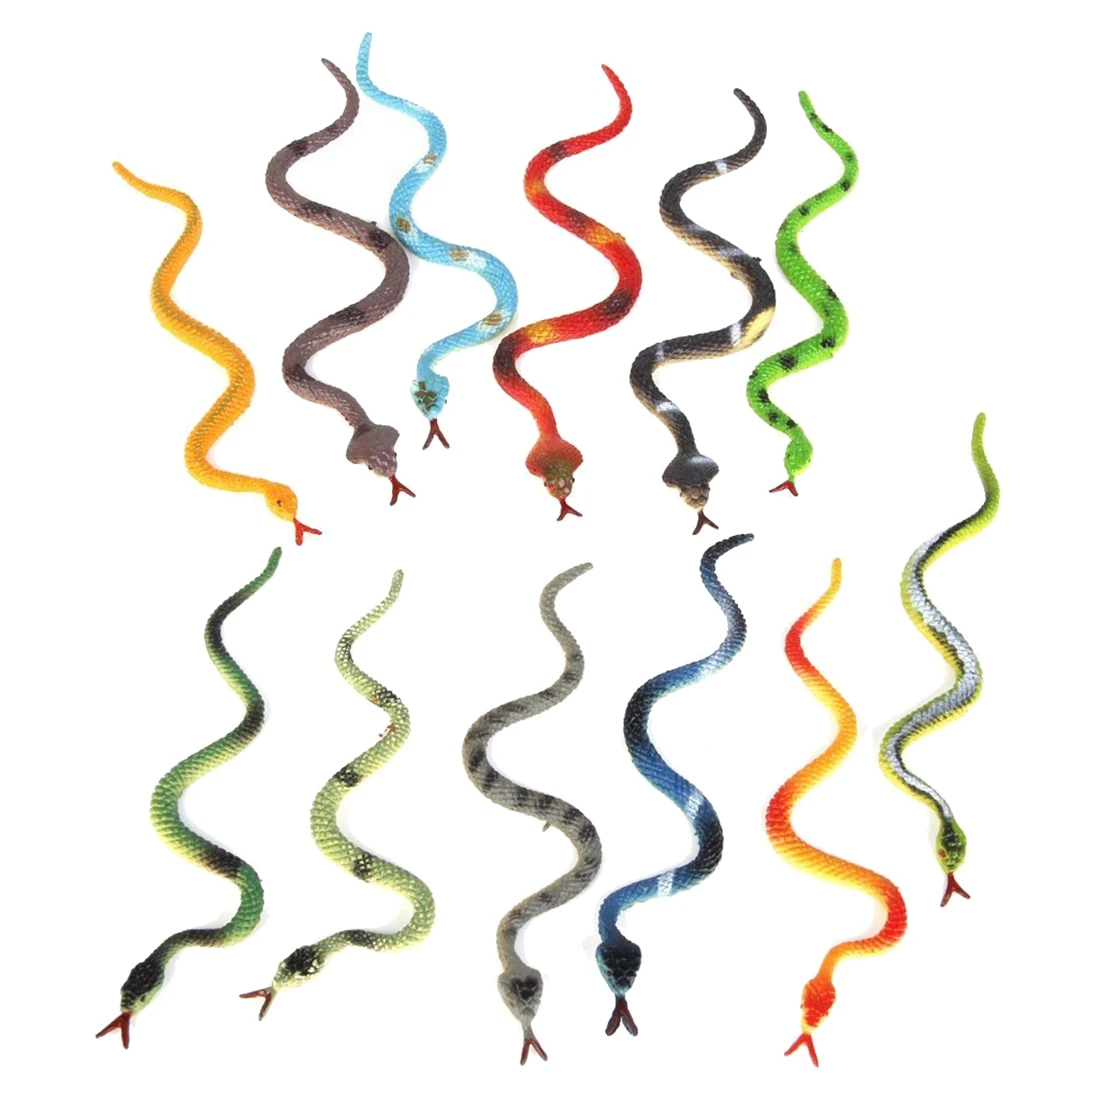 Пластиковая игрушка-модель рептилии животного змеи 12шт разноцветная - 1